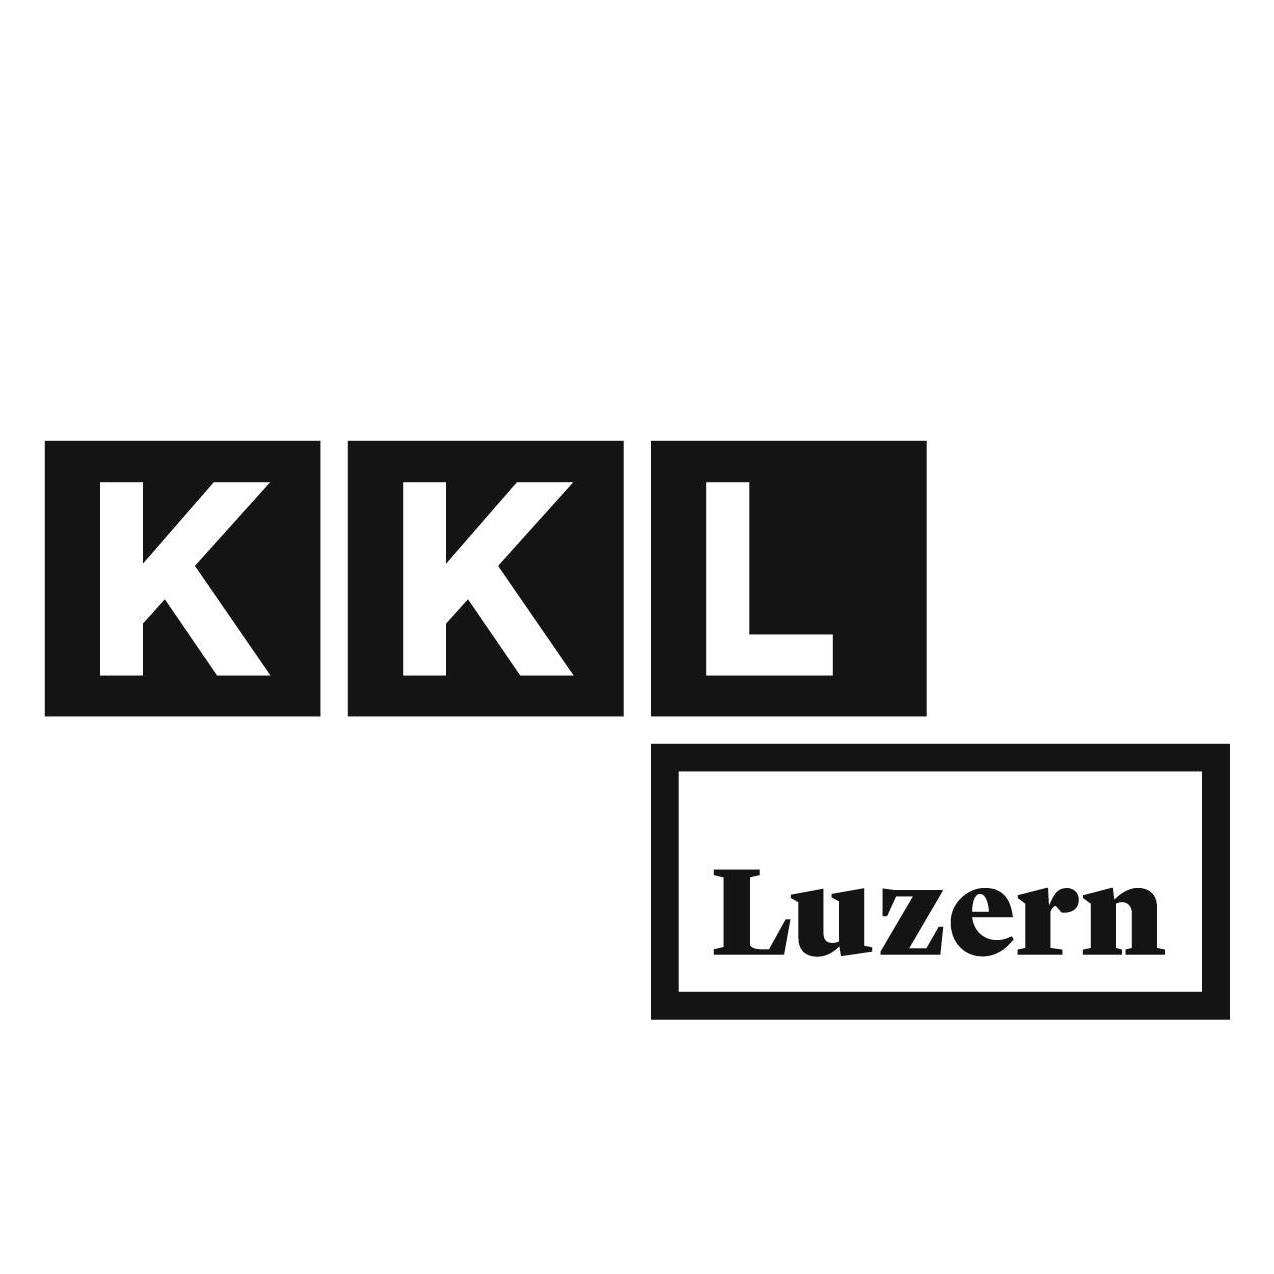 KKL Luzern Tickets